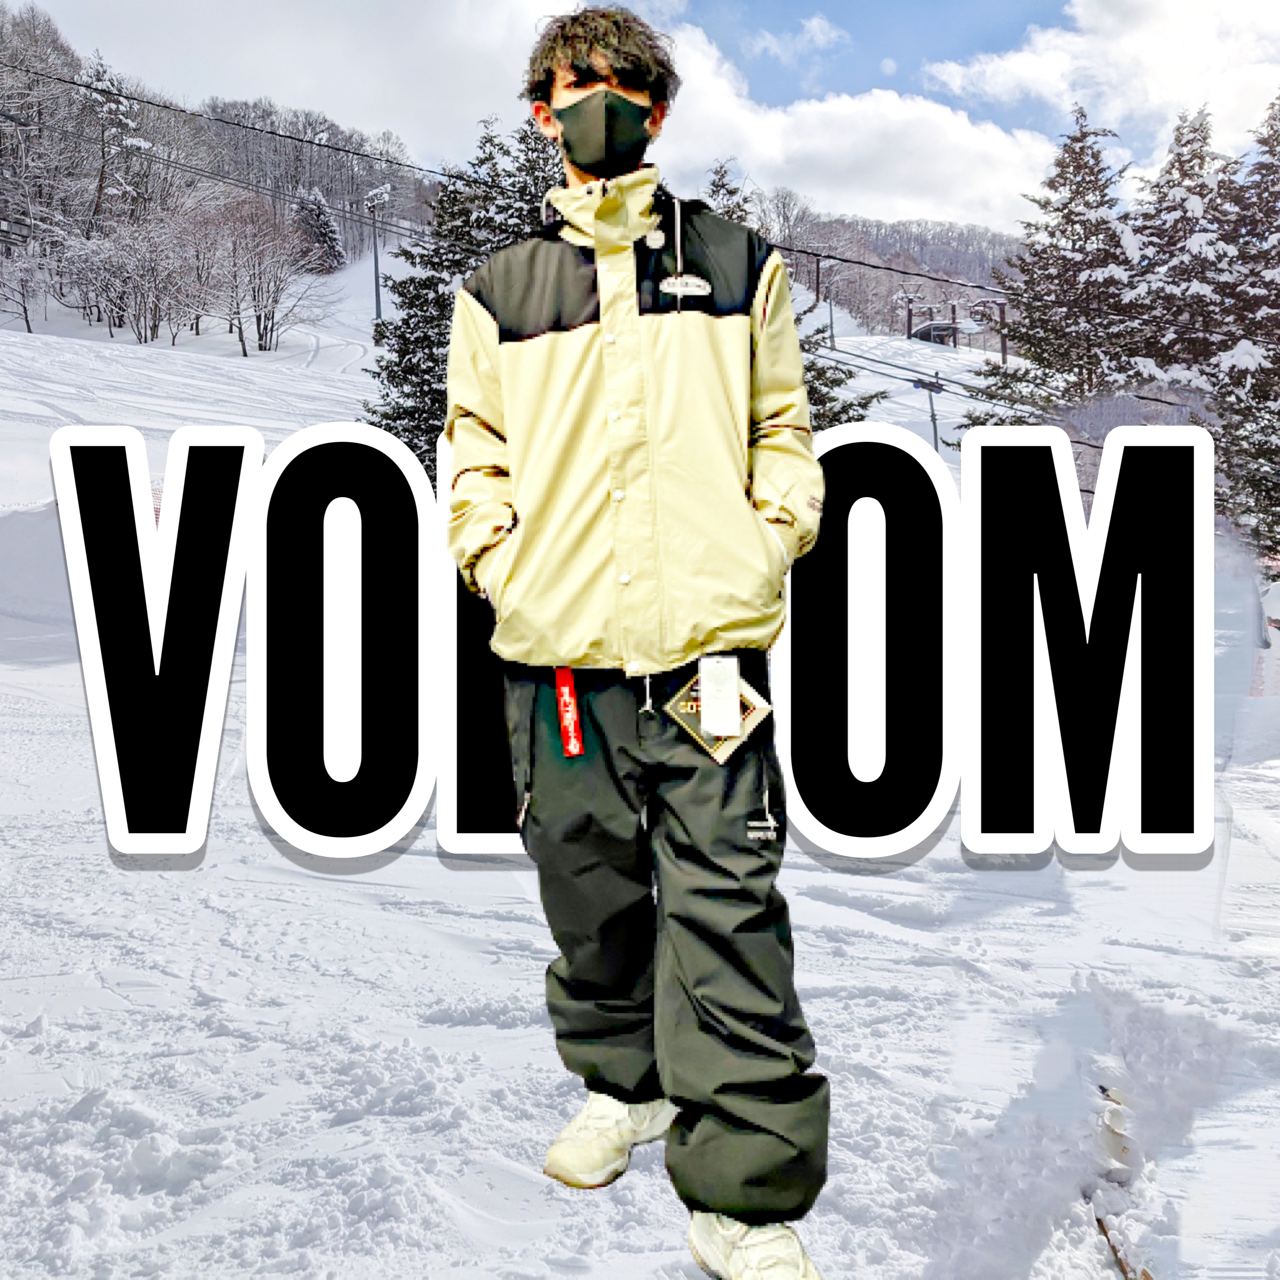 volcom スノーボードウェア メンズM - スノーボード